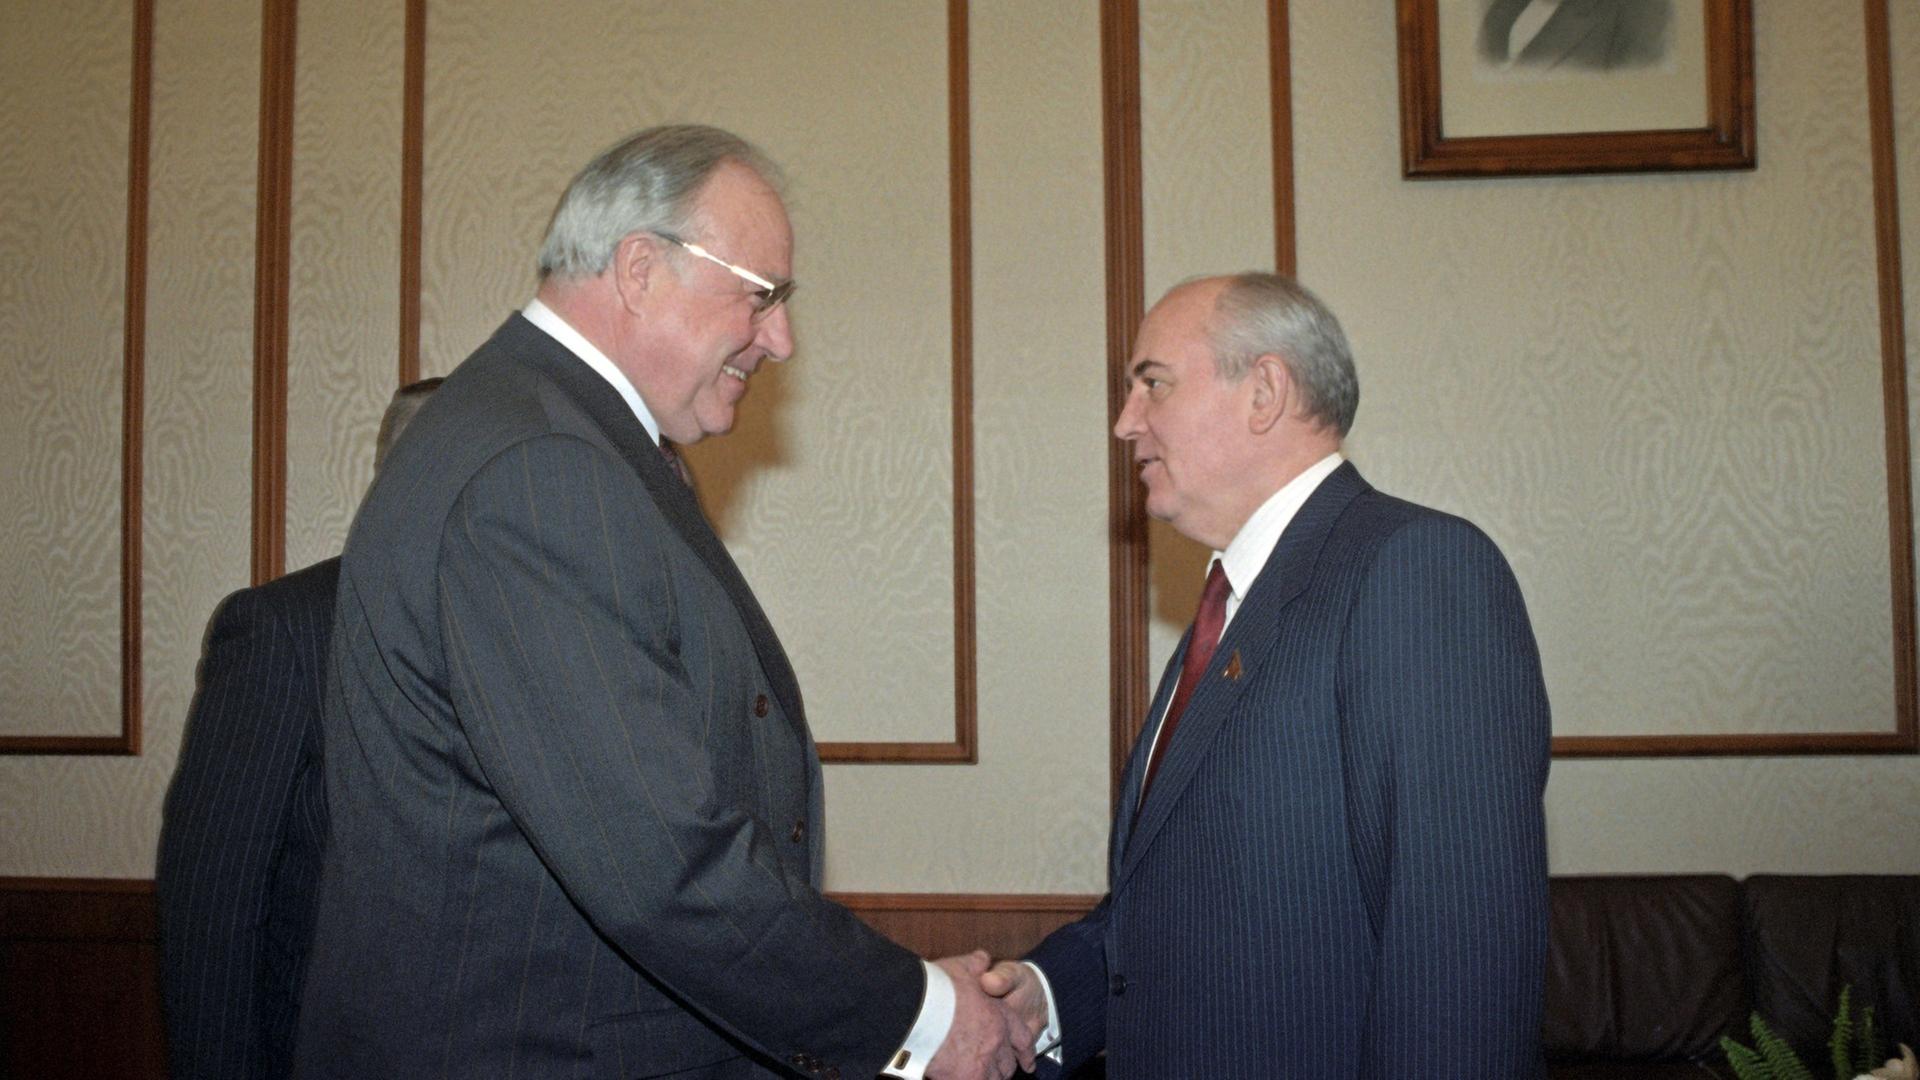 Роль горбачева в гдр кто играет. Гельмут коль и Горбачев. Объединение Германии Горбачев 1990. Гельмут коль и Горбачев Архыз.